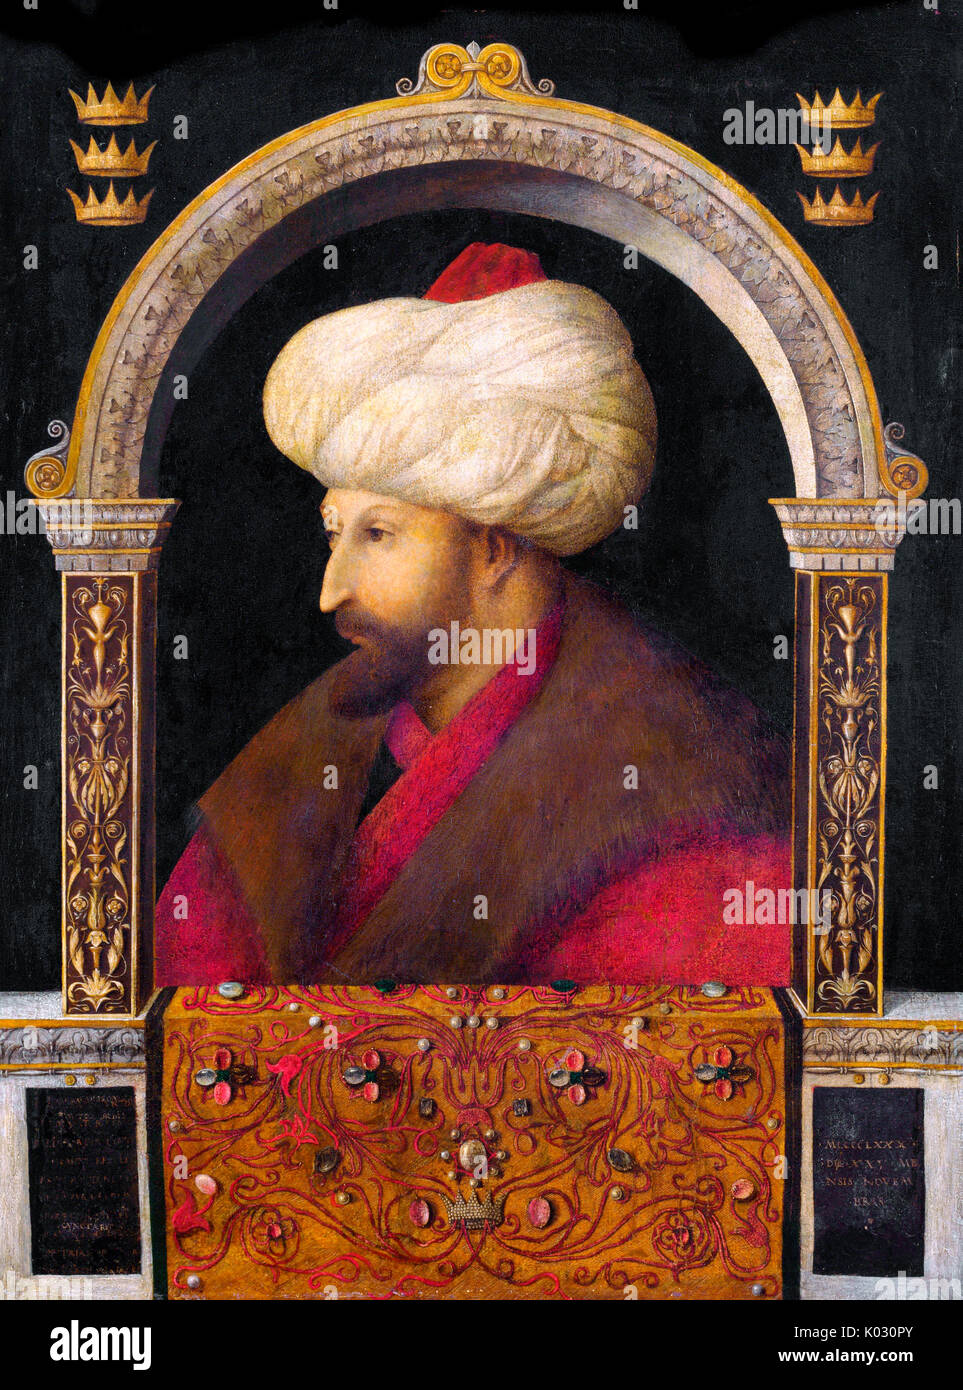 Il ritratto del sultano ottomano Mehmed il Conquistatore dal pittore italiano Gentile Bellini, 1480. Foto Stock